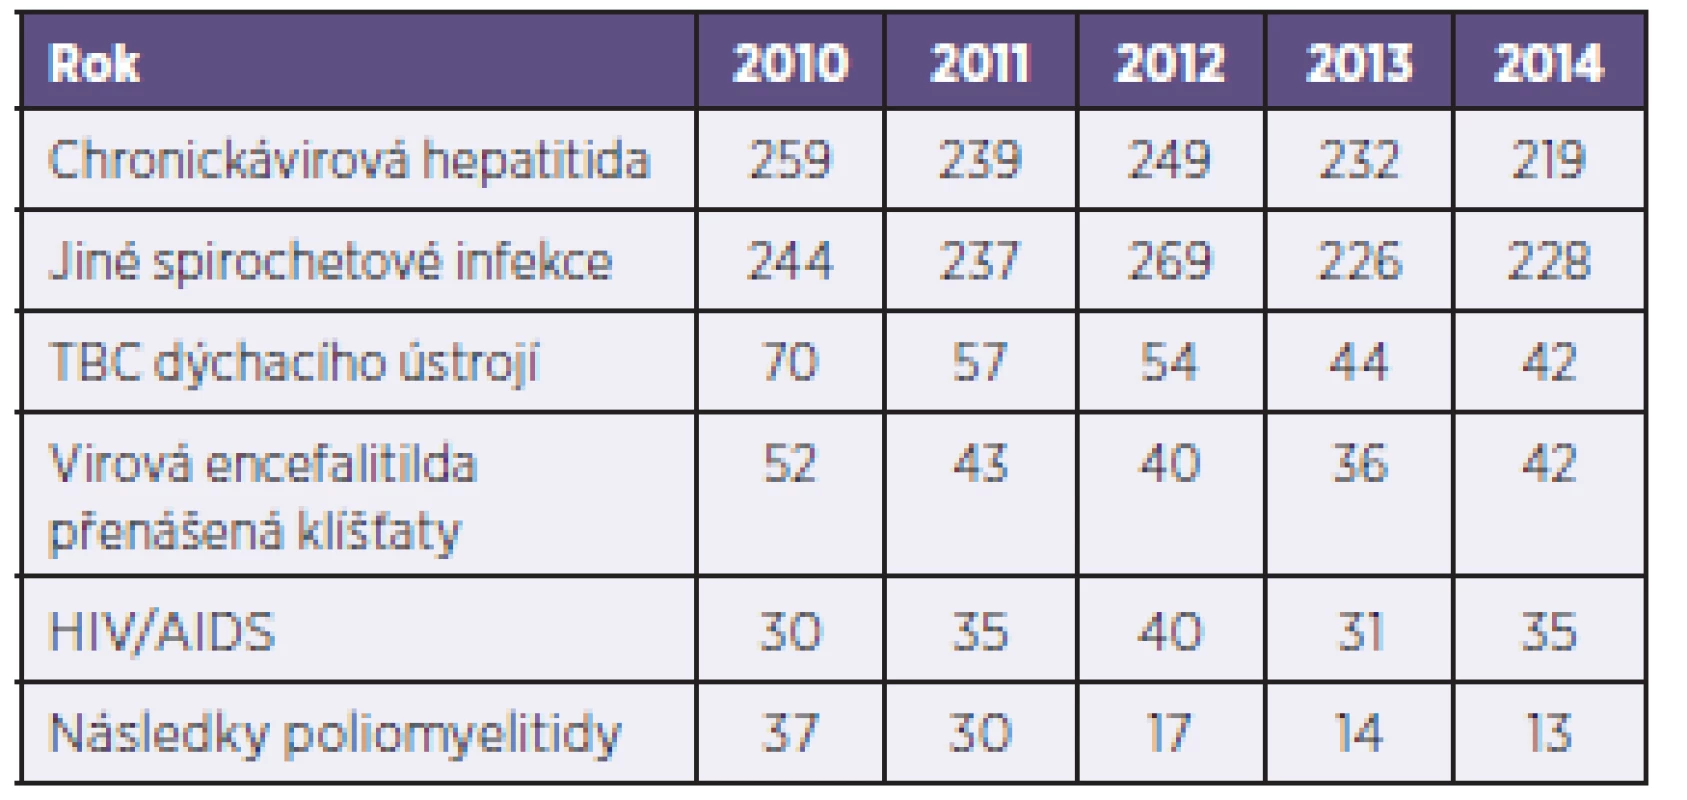 Nejčastější příčiny invalidit infekčních onemocnění od roku 2010 do roku 2014
Table 4. The most common causes of invalidity as a result of infectious disease in 2010–2014